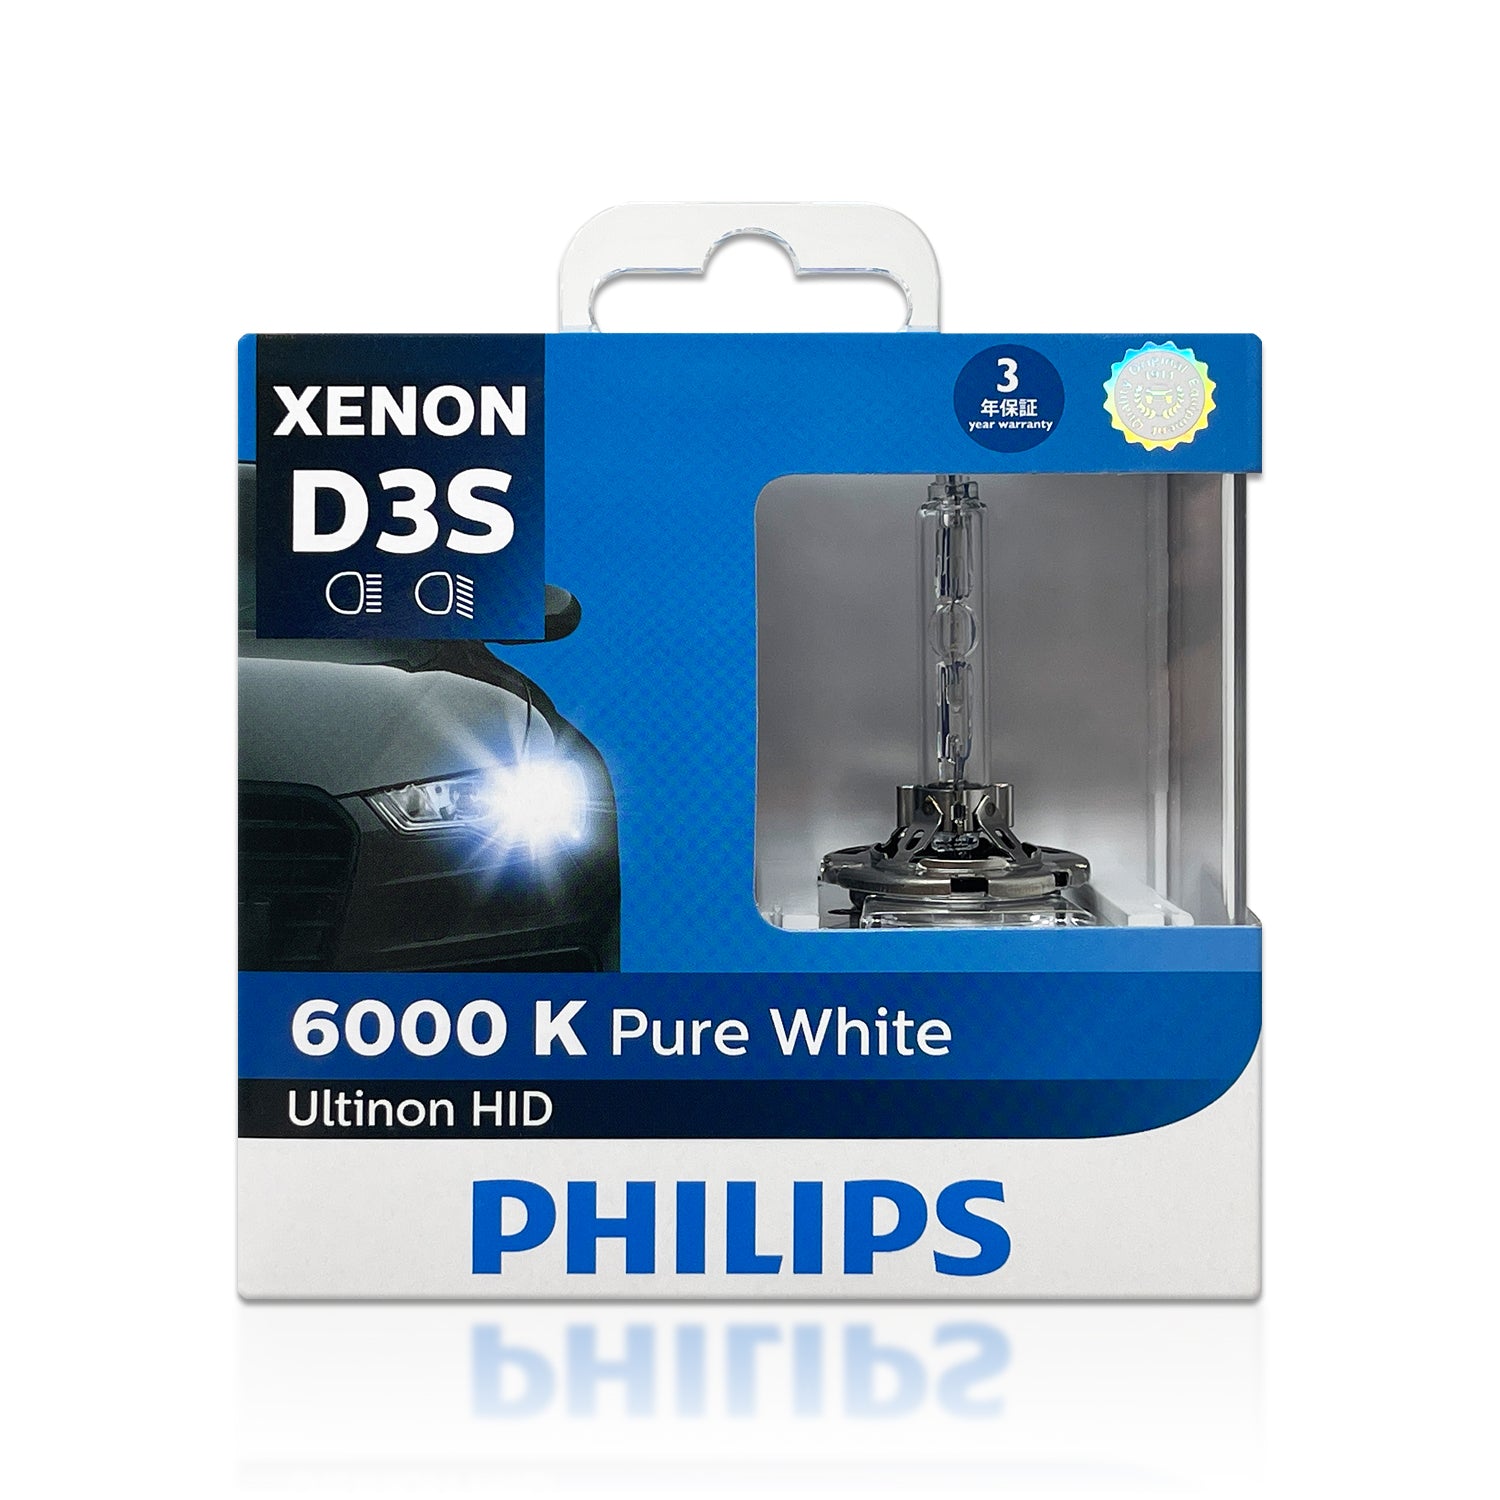 D3s standard Xenon lamps, 6000K